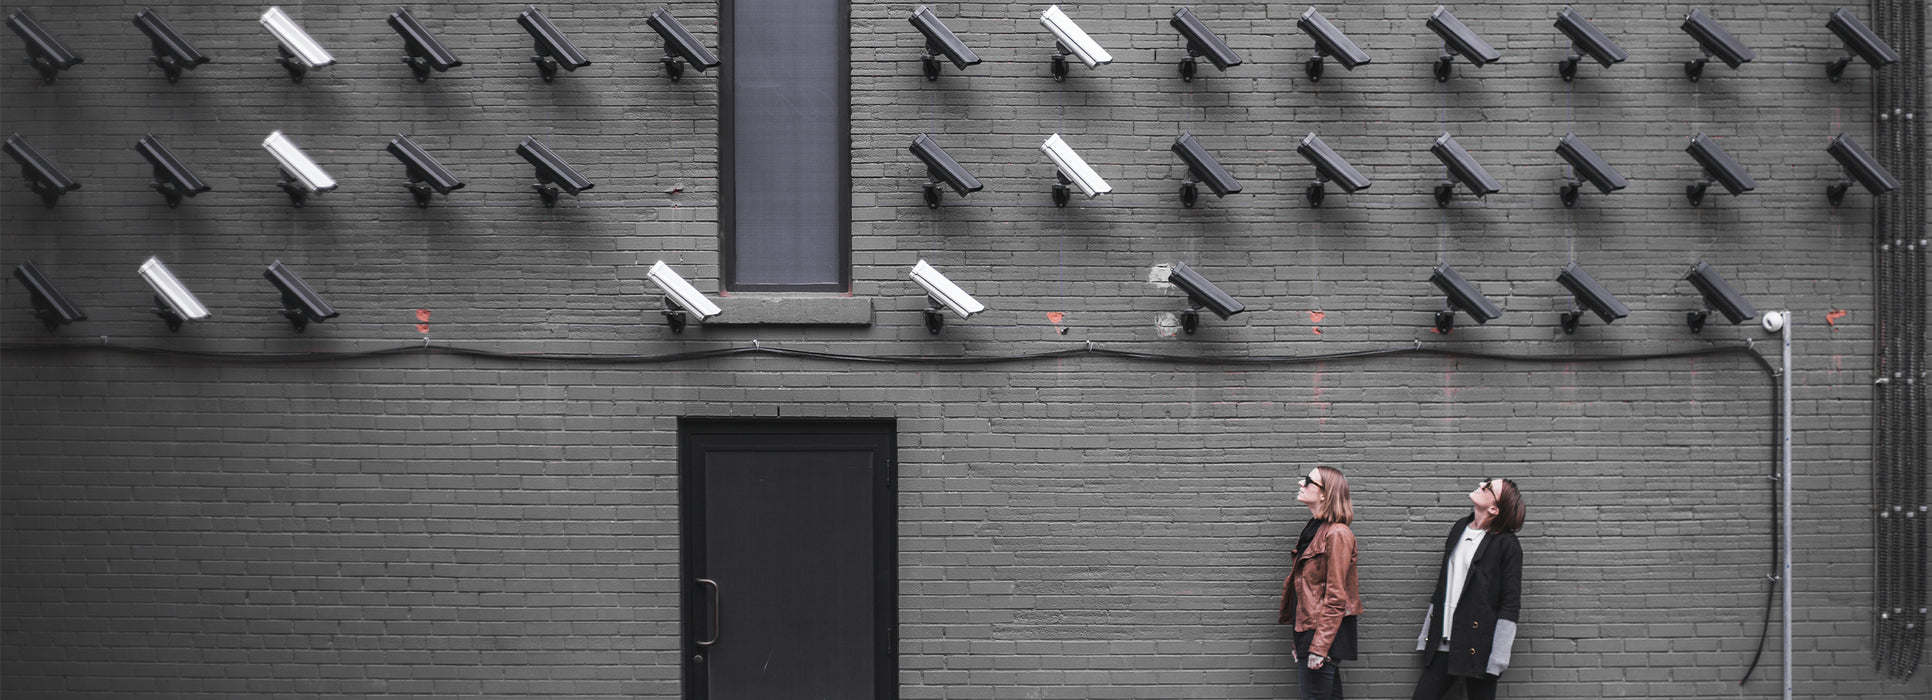 Come proteggere la tua privacy dalle minacce intelligenti per la casa?